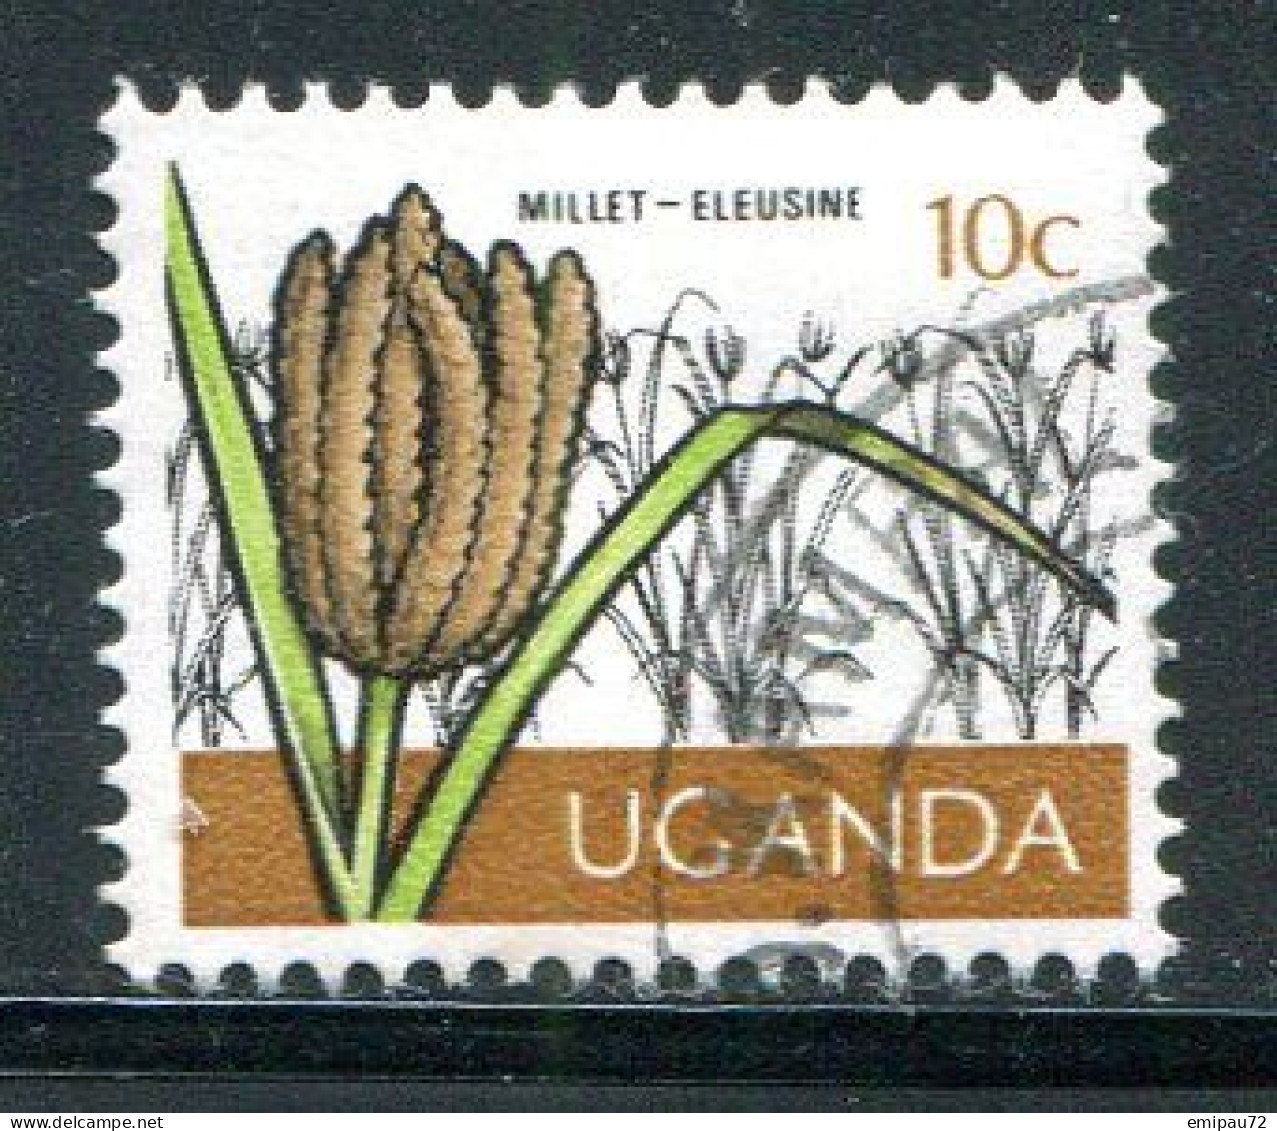 OUGANDA- Y&T N°97- Oblitéré - Uganda (1962-...)